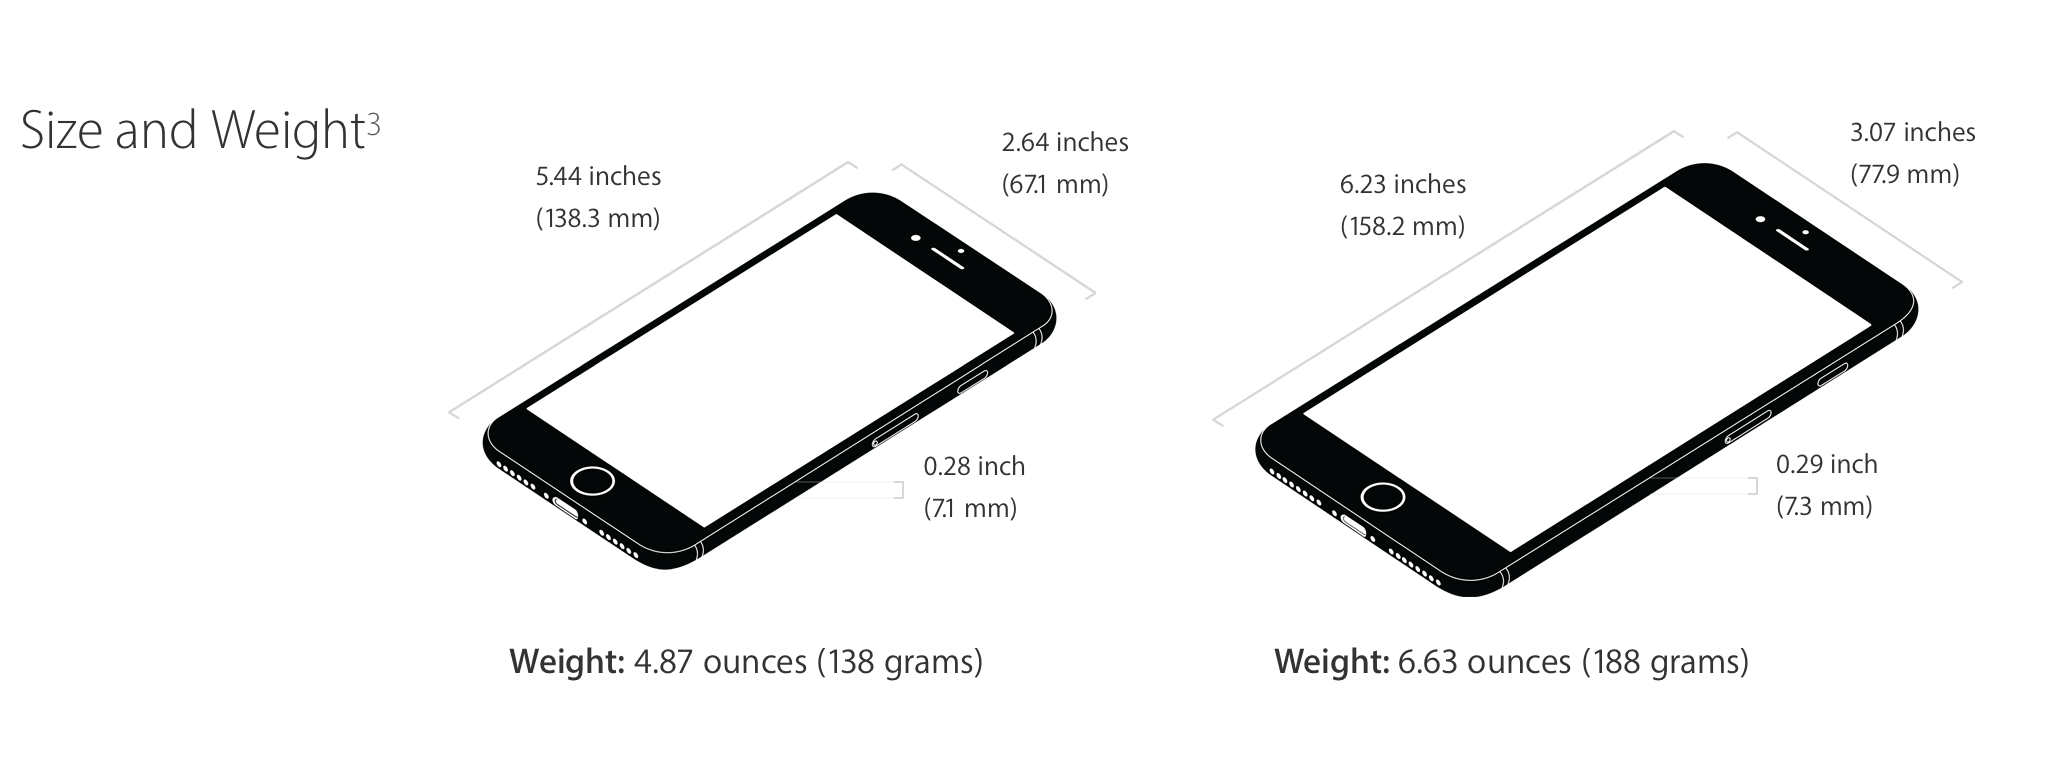 Iphone 7 plus динамика цен. Айфон 7 габариты. Айфон 8 Размеры телефона. Iphone 7 Размеры. Iphone 8 габариты.